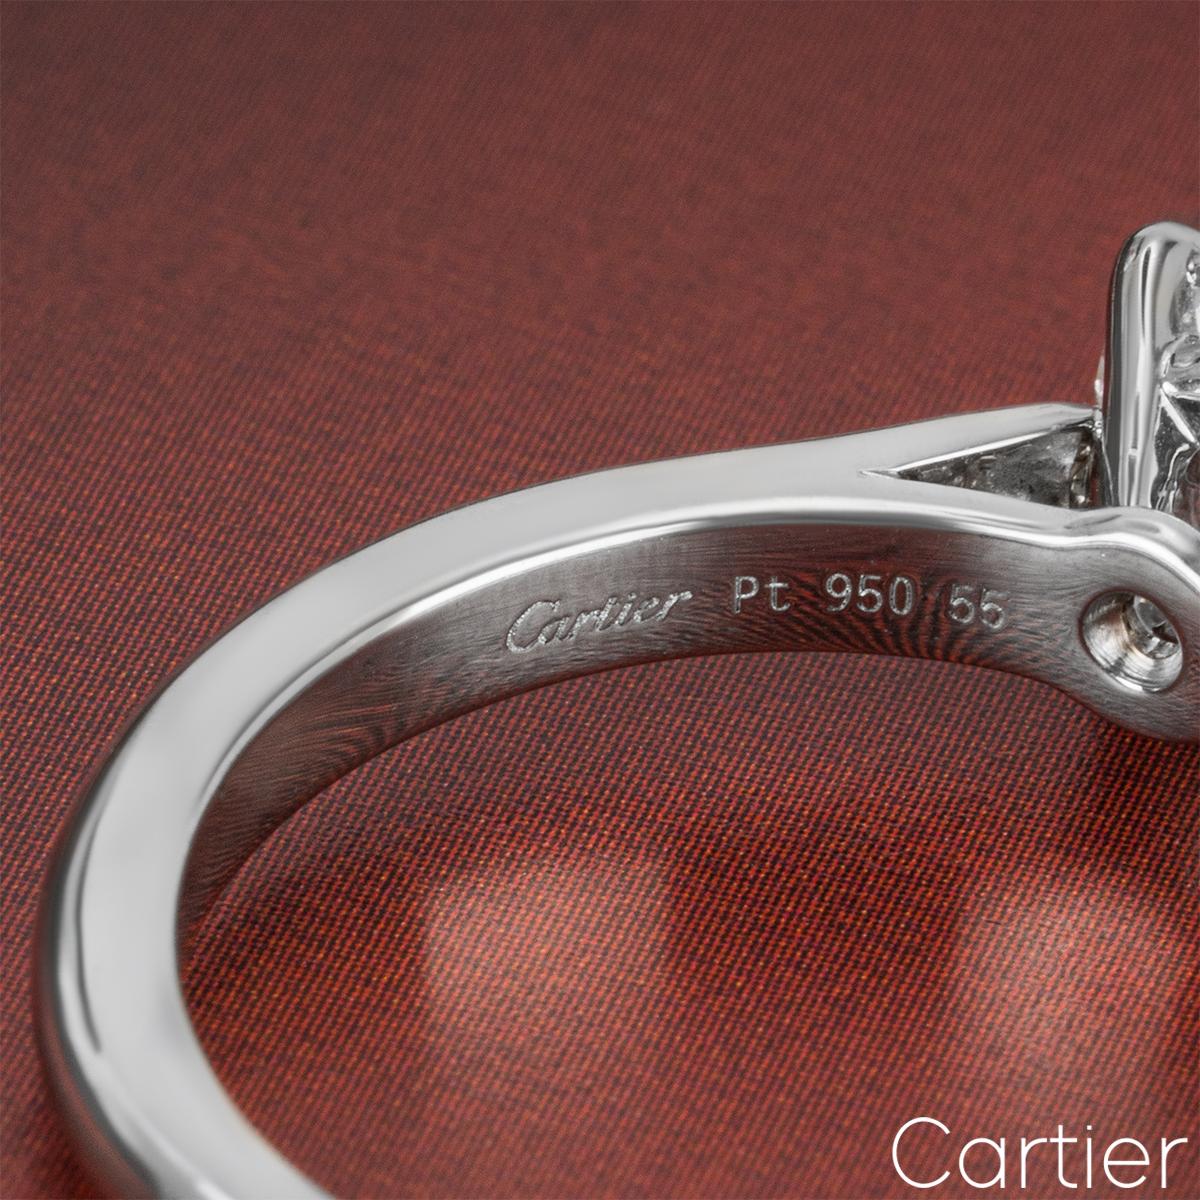 Round Cut Cartier Platinum Diamond Solitaire 1895 Ring 1.21 Carat F/VVS1 For Sale